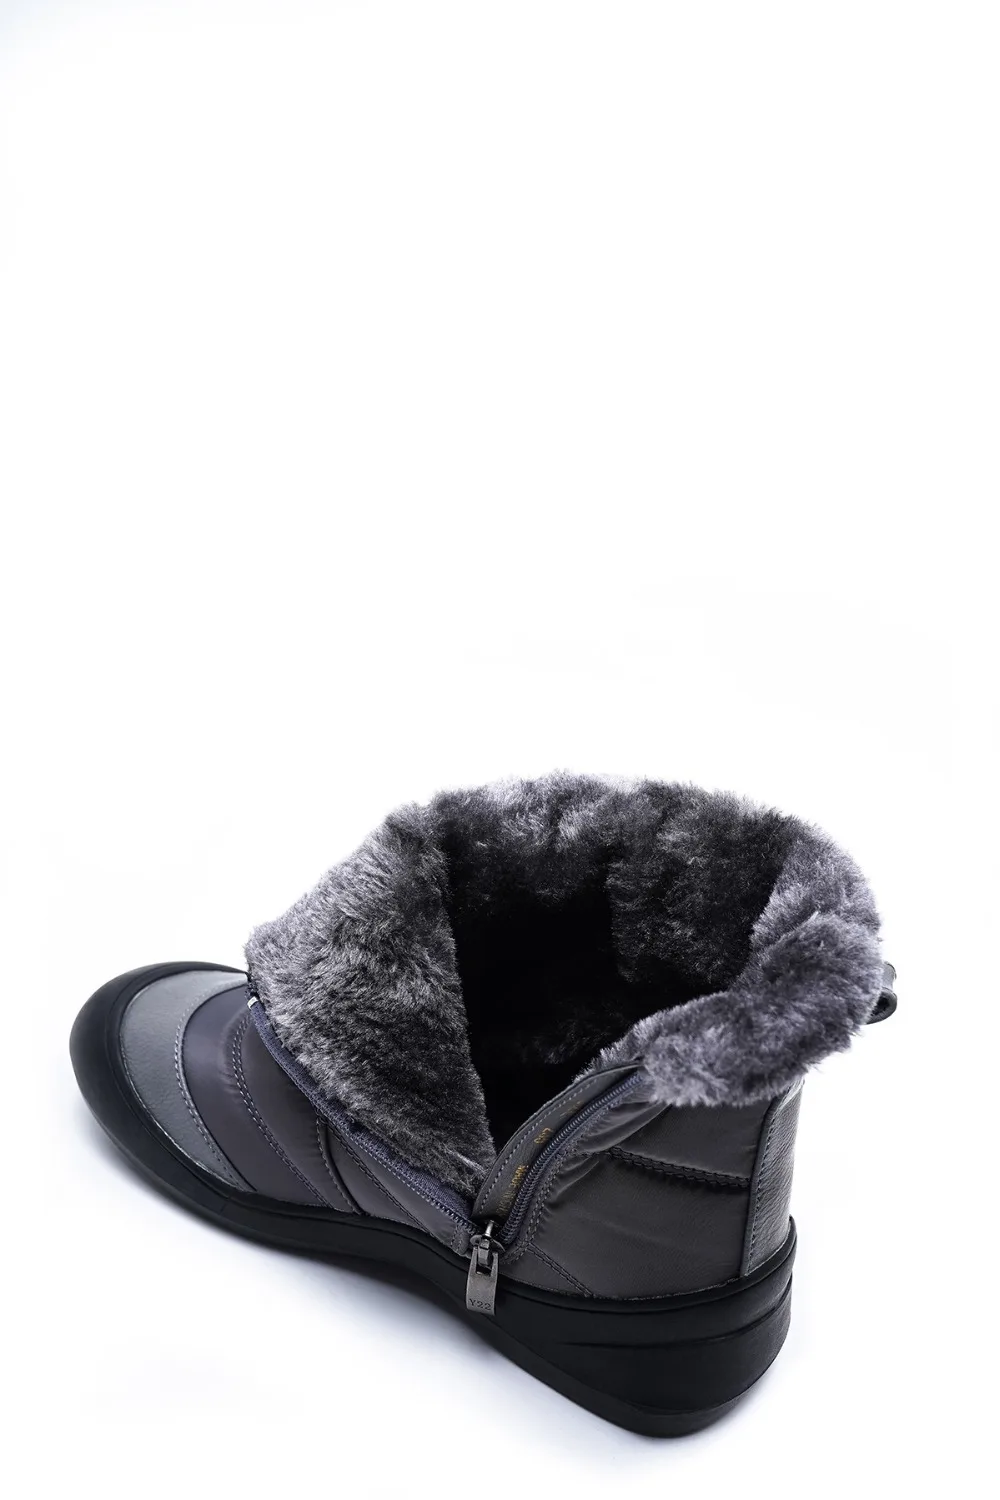 MORAZORA/теплые зимние ботинки женские теплые хлопковые ботинки на молнии с густым мехом однотонная повседневная обувь зимние женские ботильоны